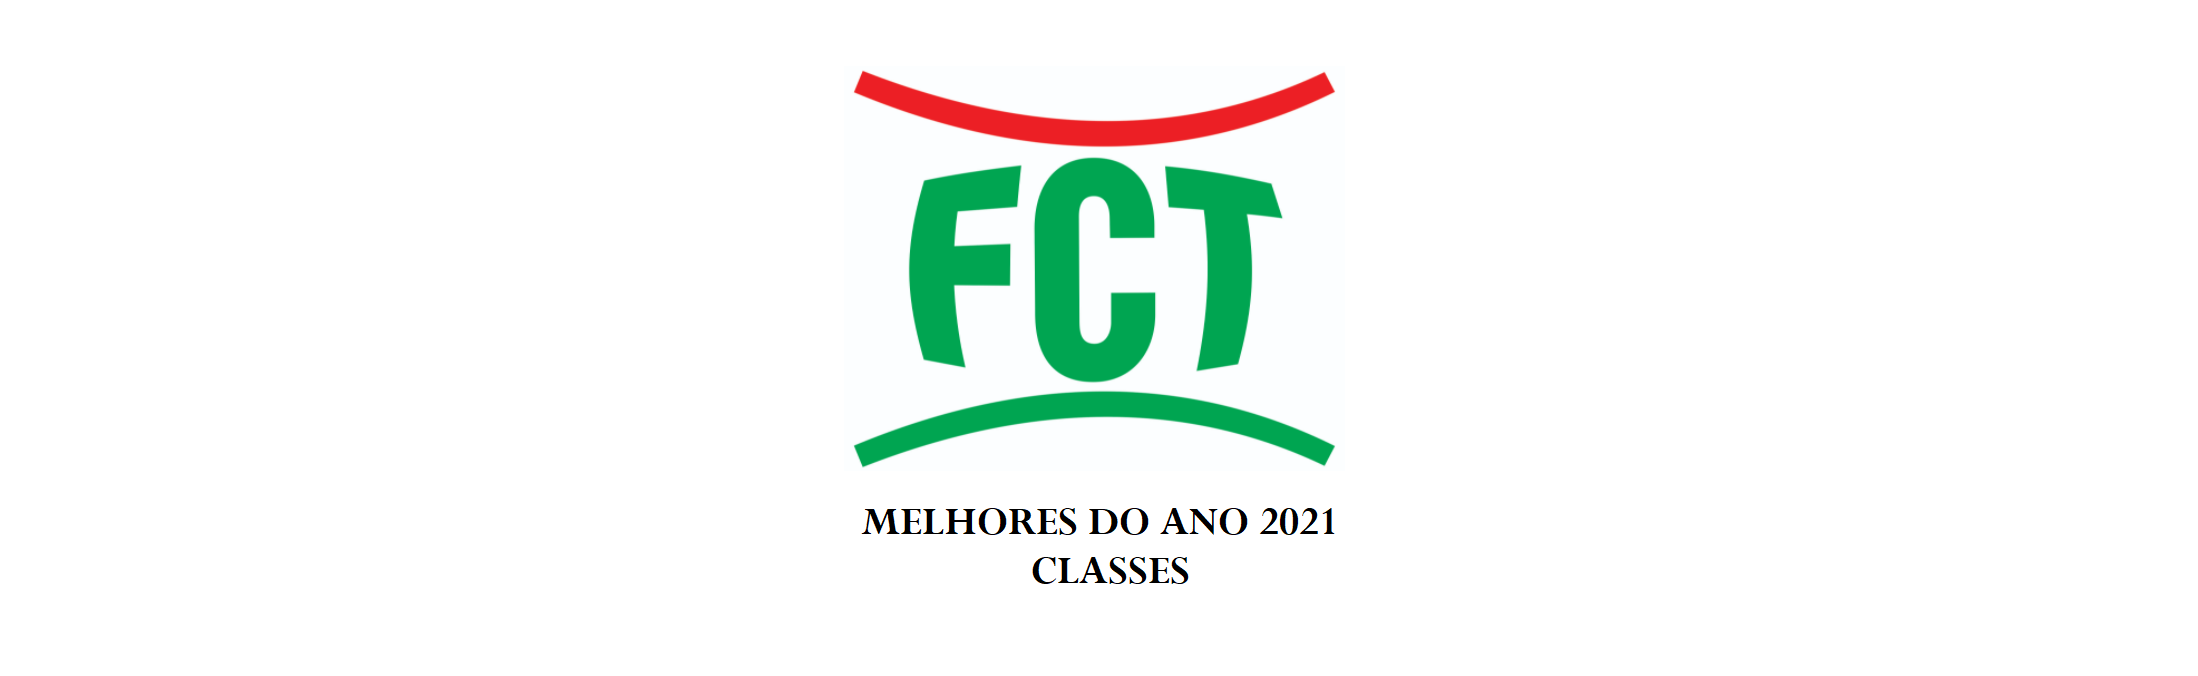 MELHORES DO ANO 2021 - CATEGORIA CLASSES